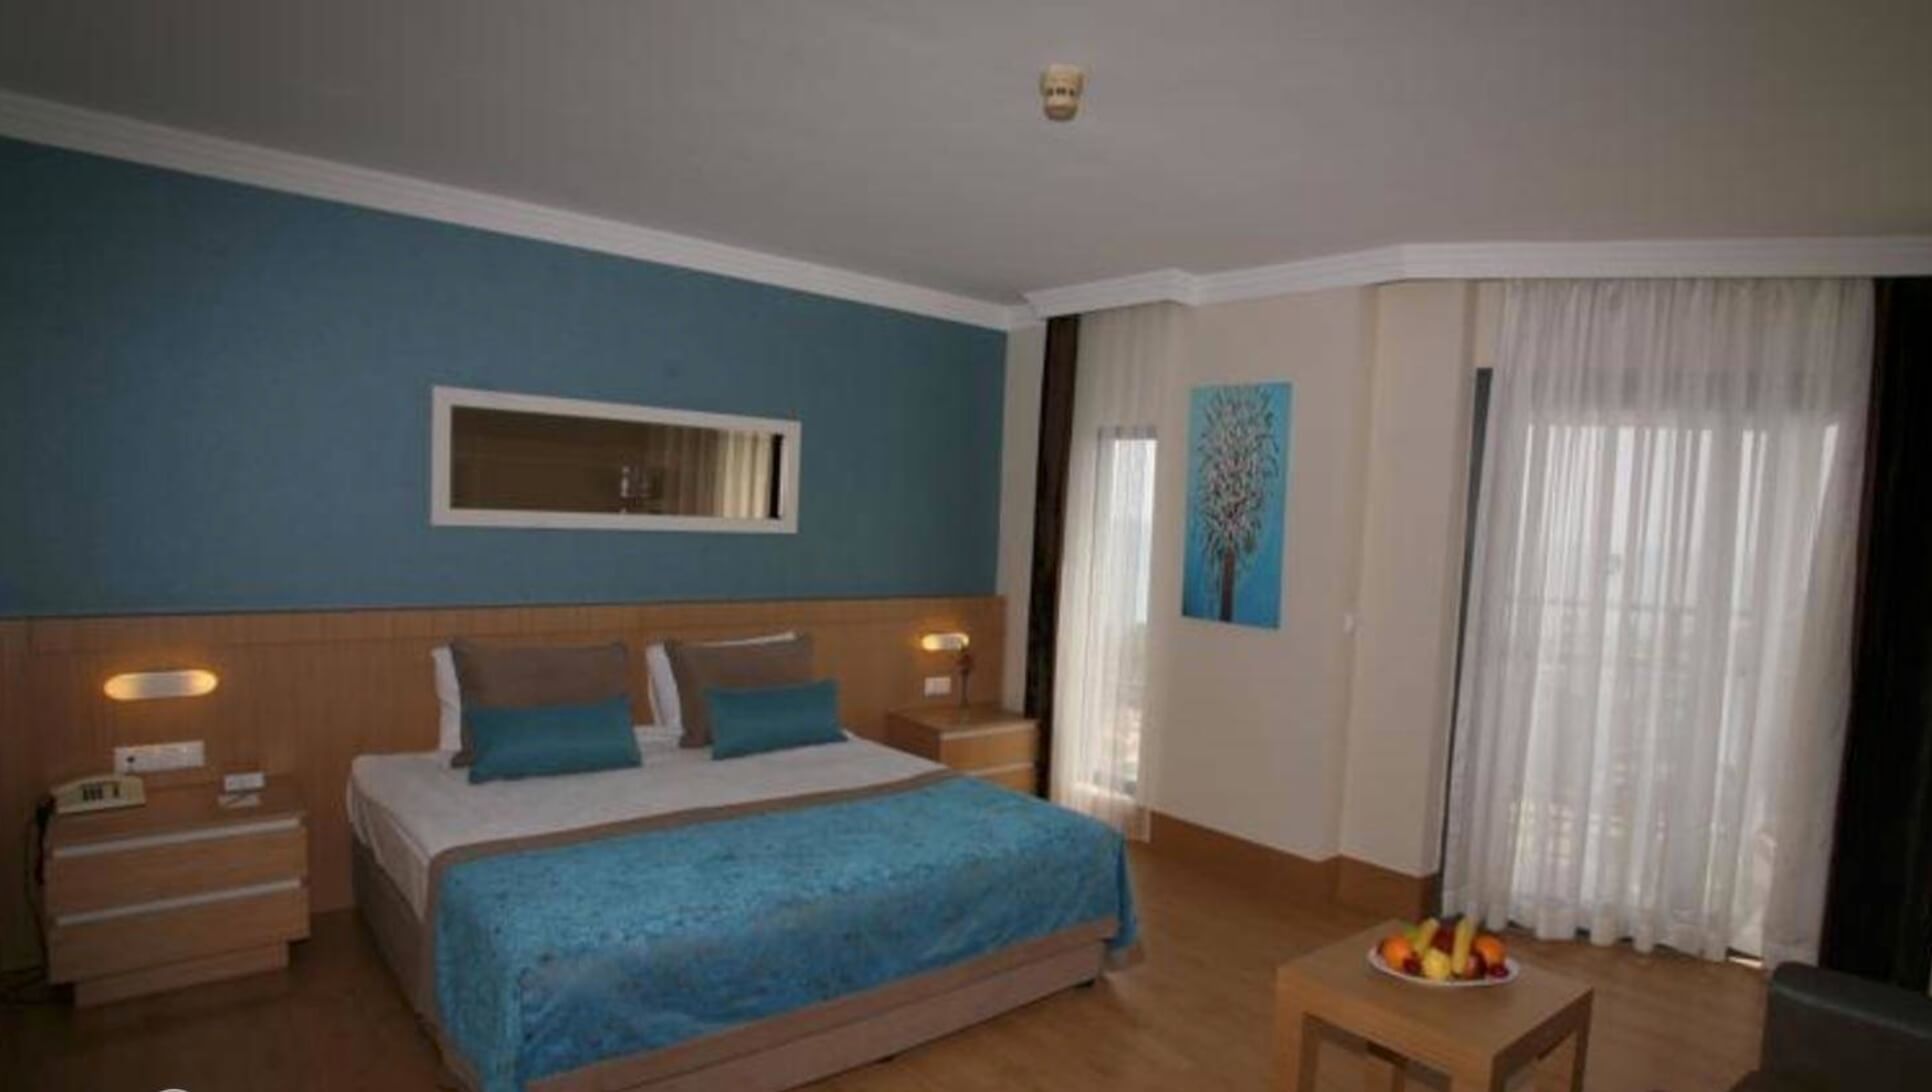 Тур в Кириш в Limak Limra Hotel & Resort 5* (Турция) на 7 ночей с 03.04.19 от 43 541 рубля (Ultra AL) на двоих